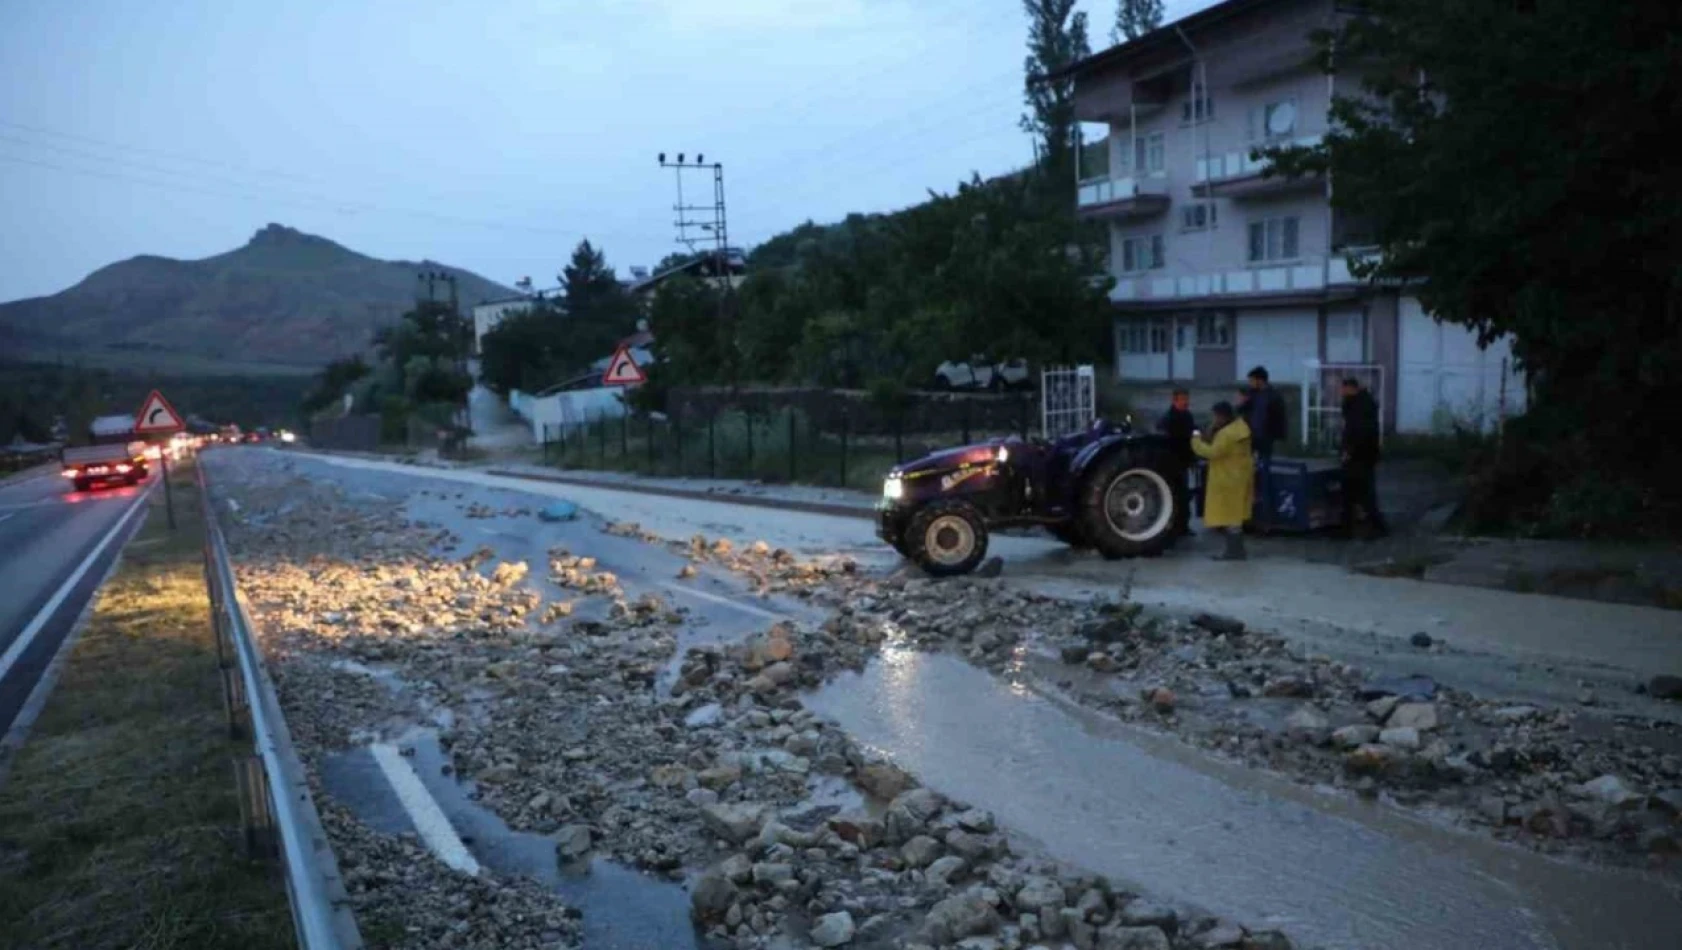 Sel Malatya-Kayseri karayolunu kapattı